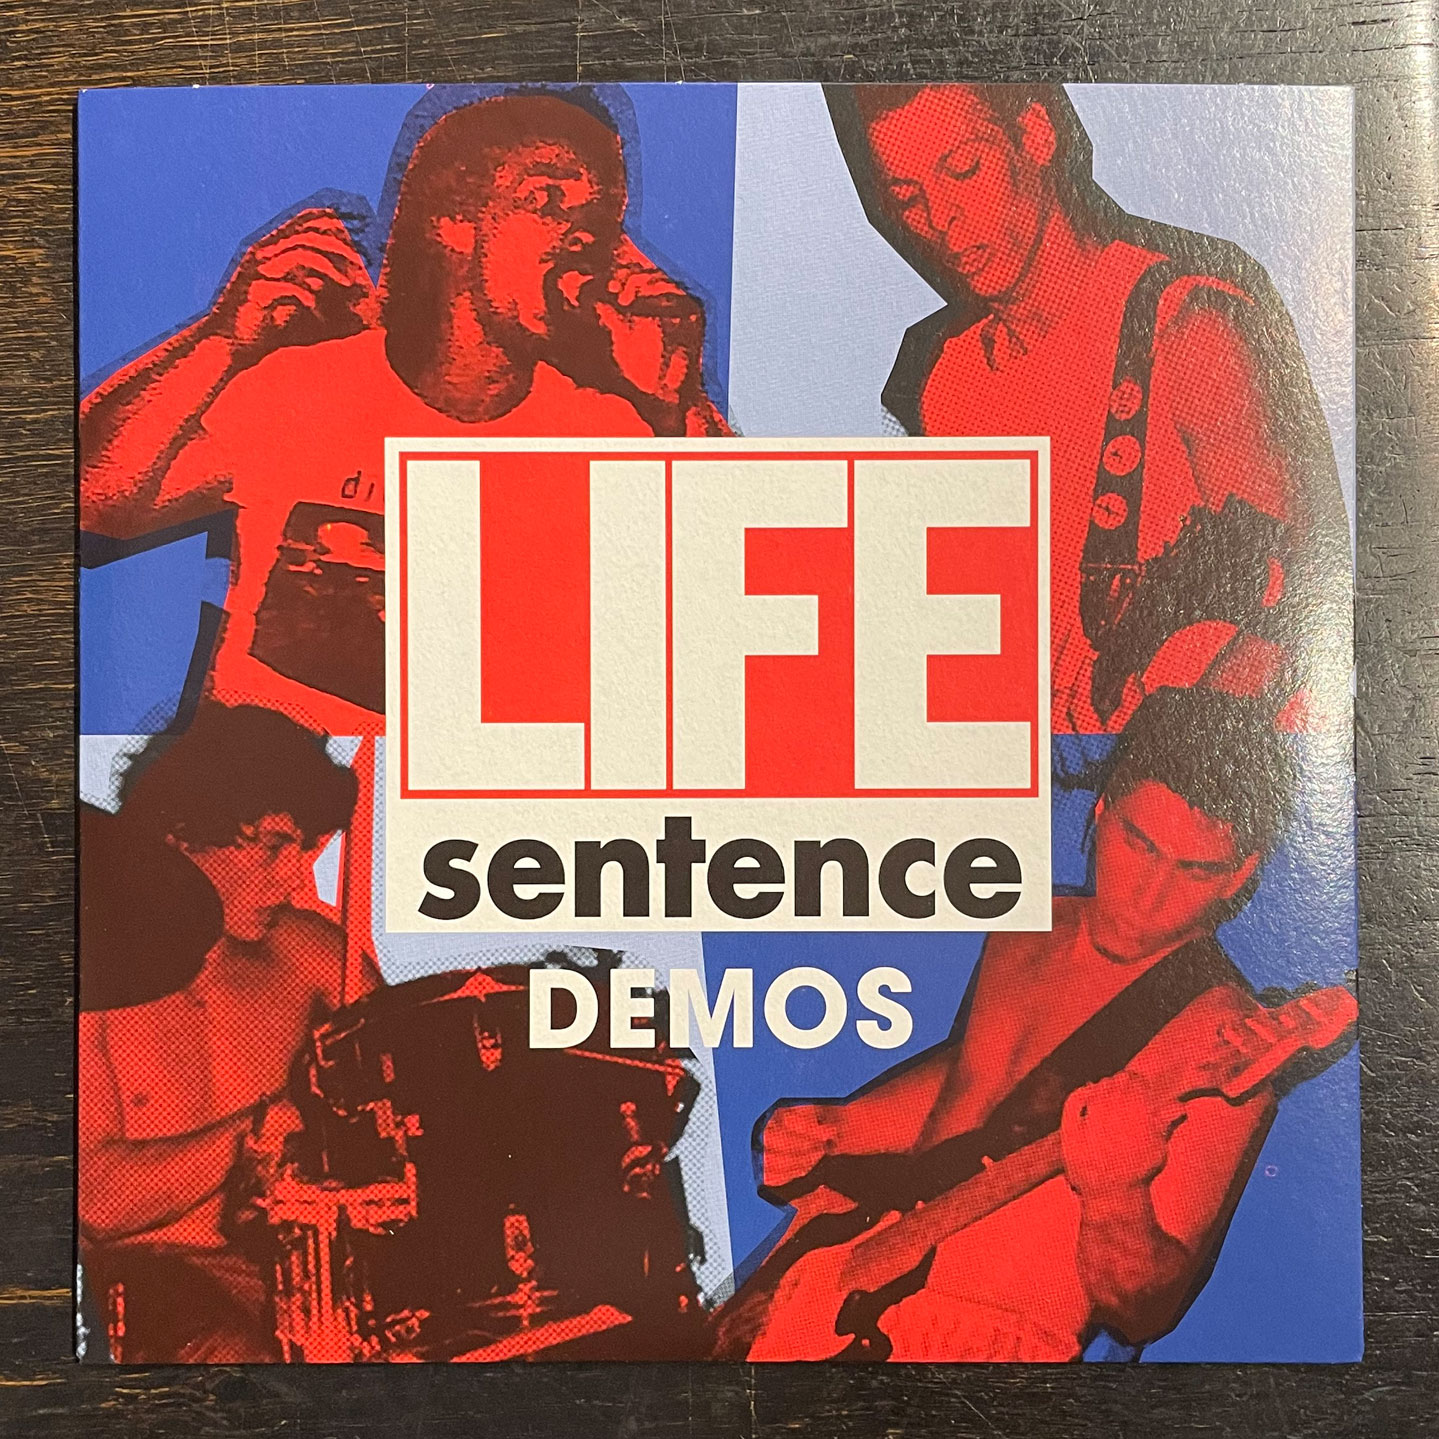 LIFE SENTENCE 7" EP DEMOS